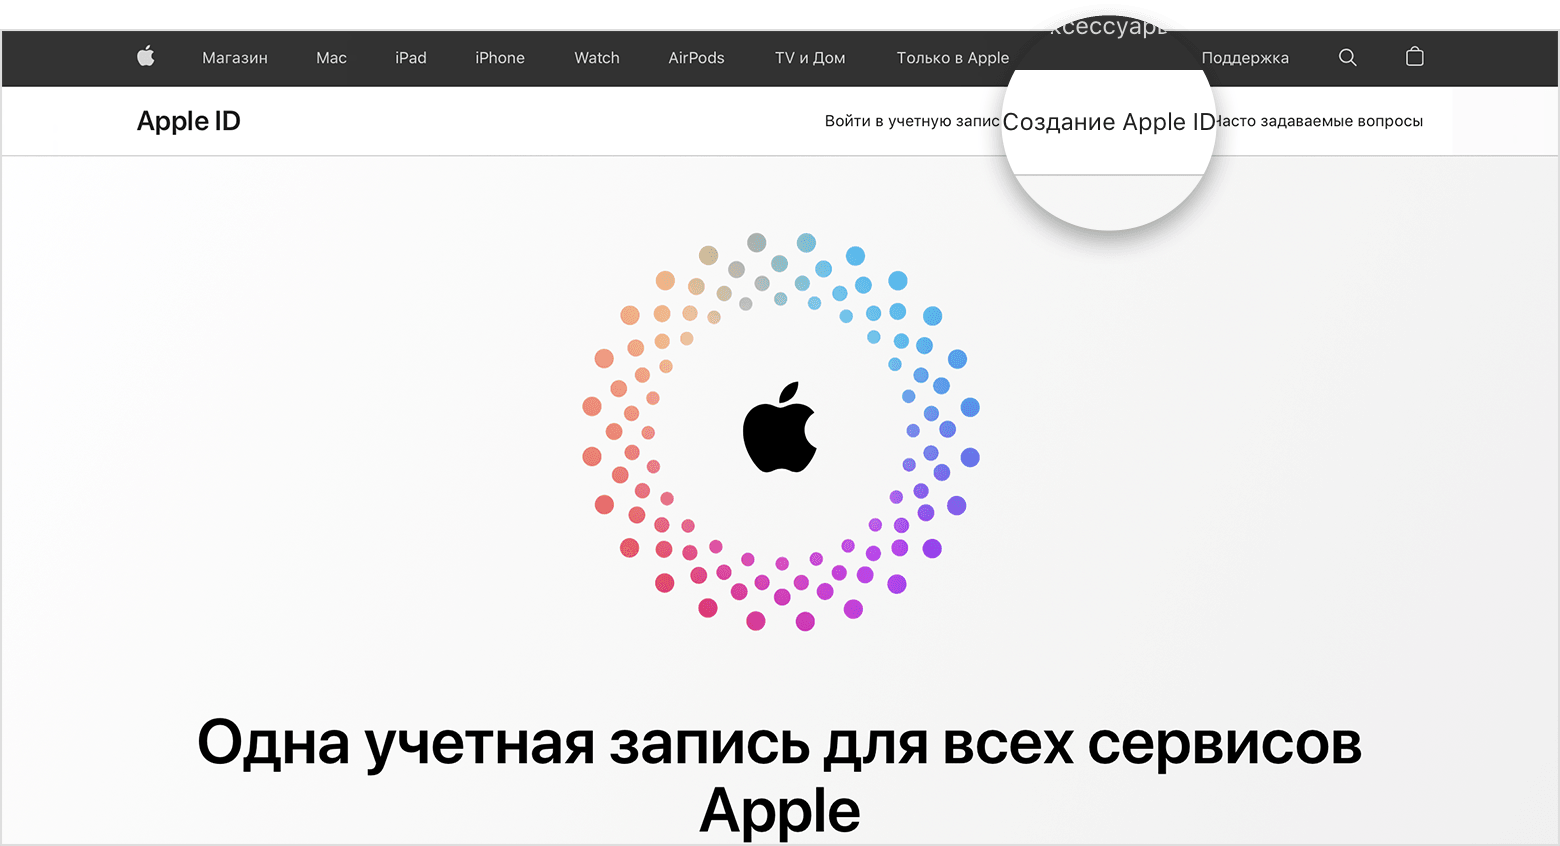 Снимок экрана со страницей appleid.apple.com, содержащий логотип Apple в центре экрана с разноцветными концентрическими кругами.